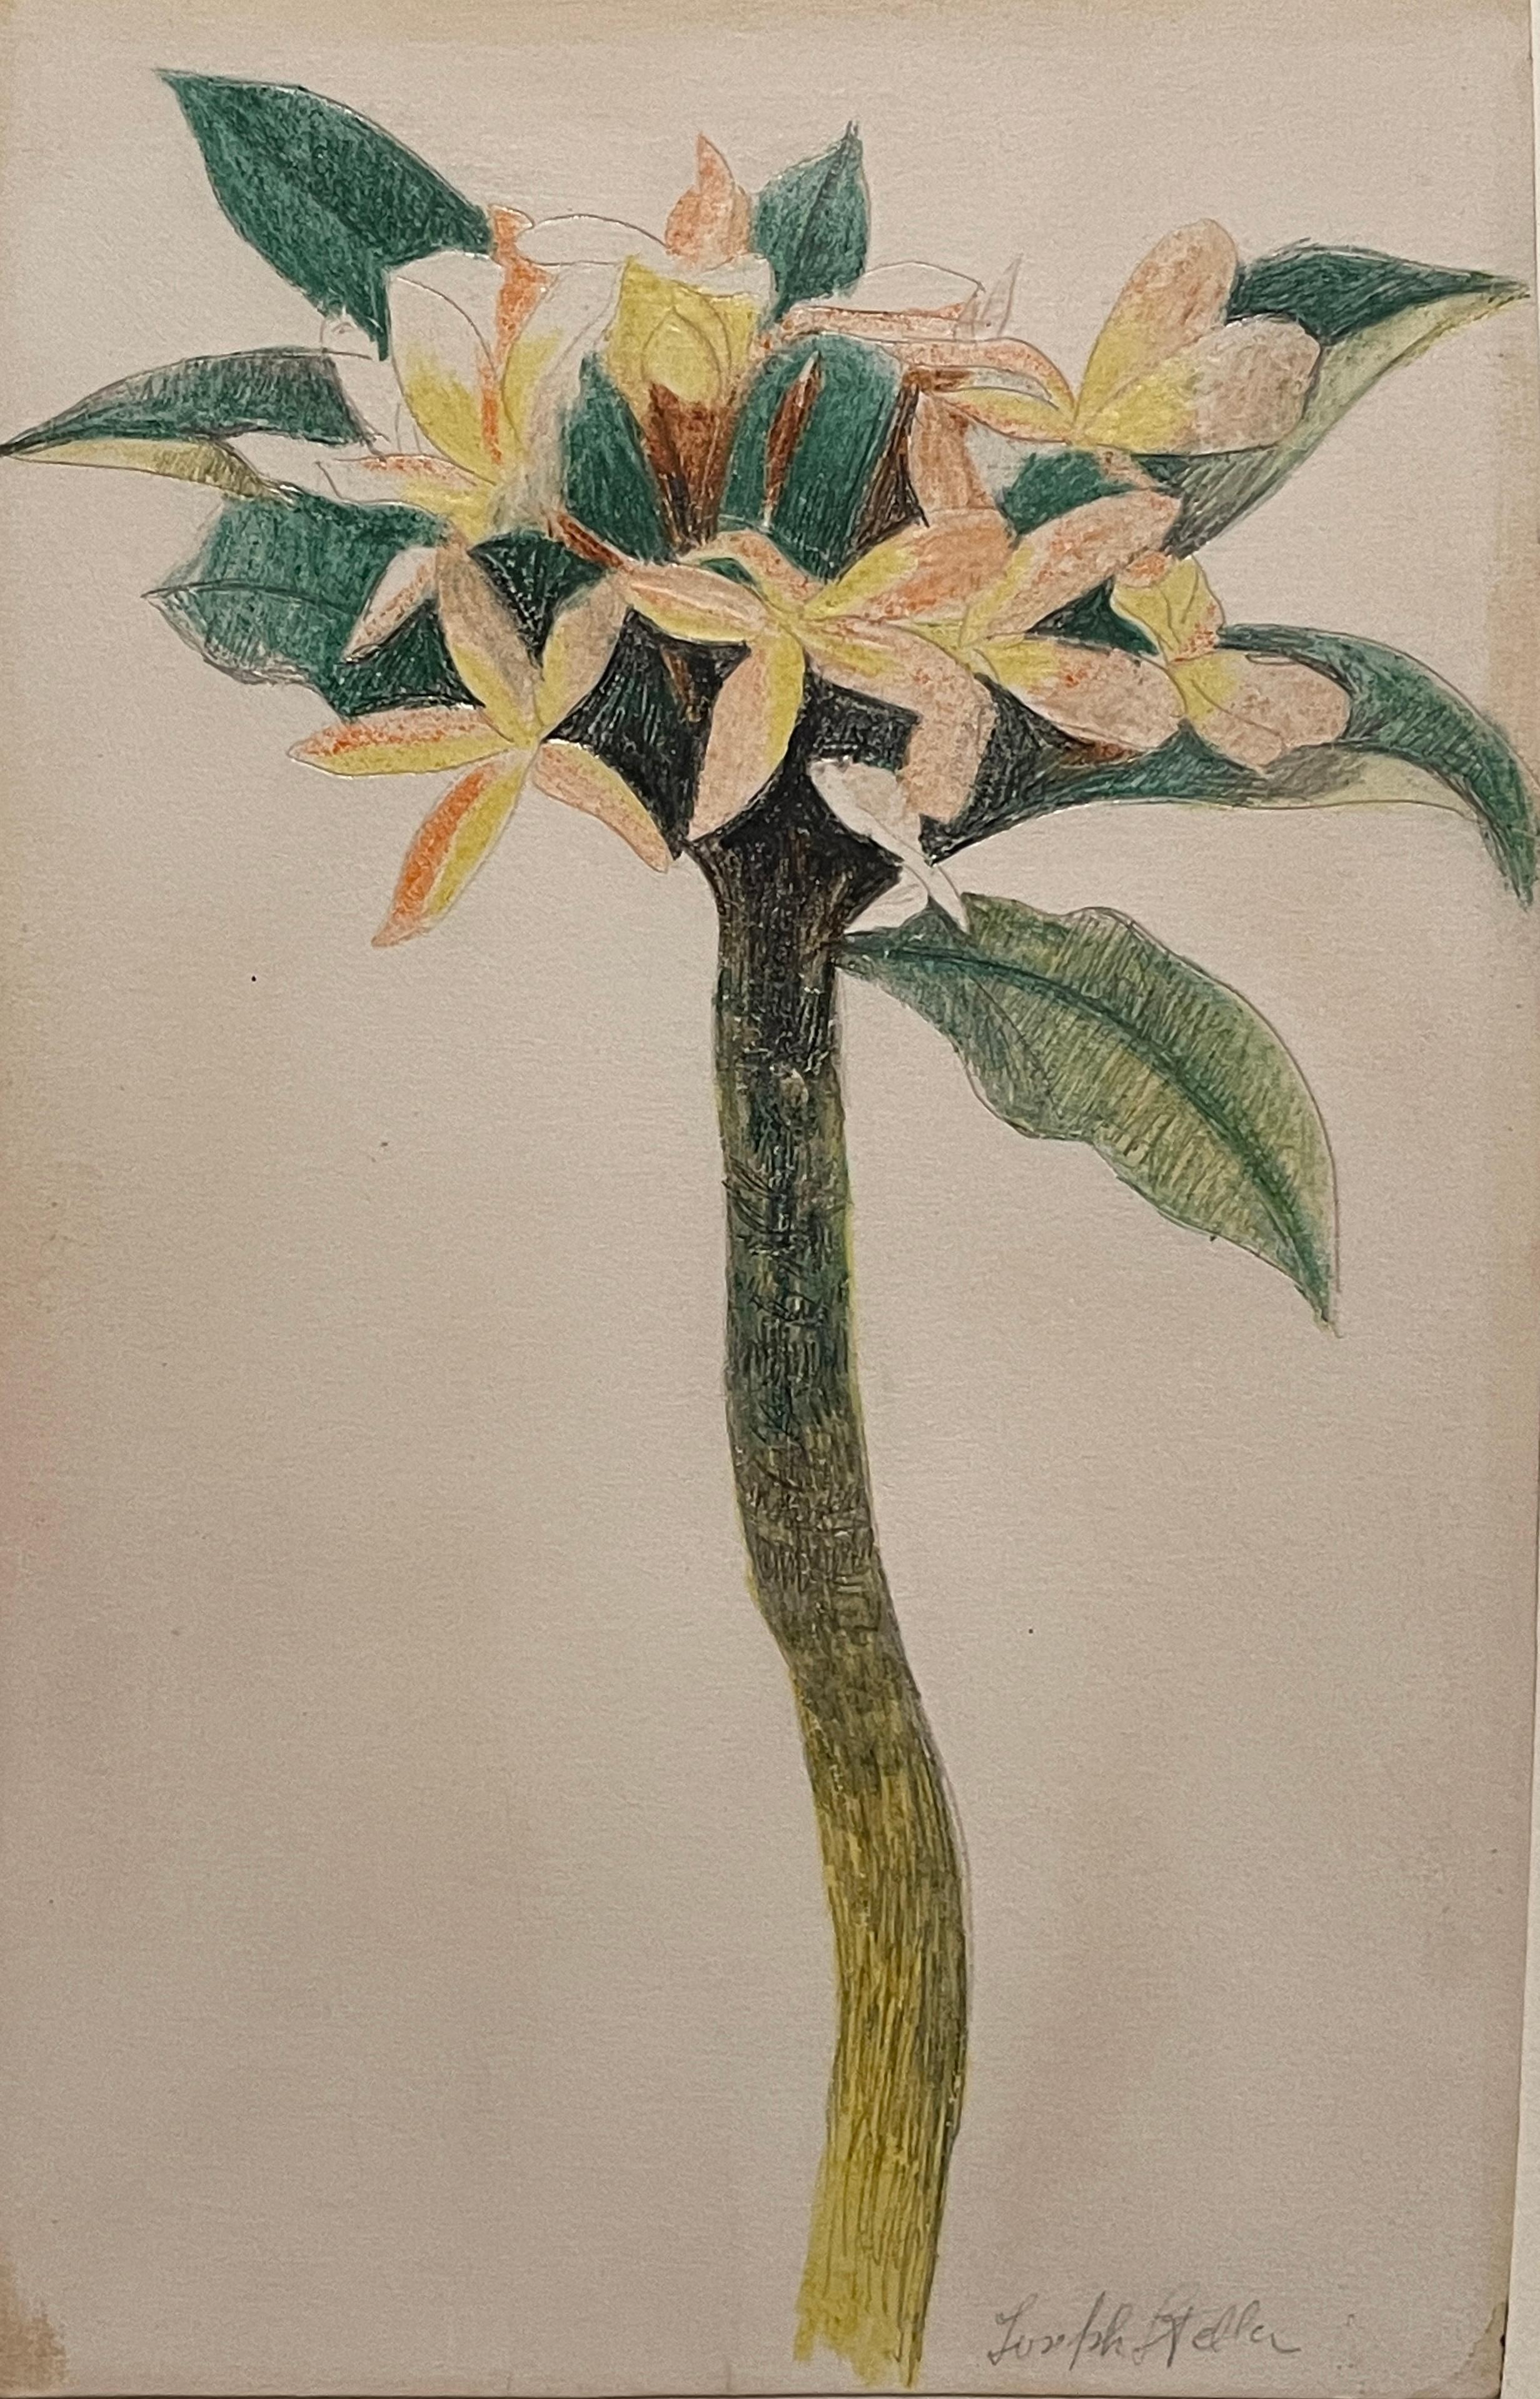 Joseph Stella  (1877-1946, Américain, Italien) "Étude de fleurs". Crayon et crayon sur papier. Signé en bas à gauche. Image 6 7/8" x 4 /34". Encadré 12 1/2" x 10". Label de la galerie (a) Gallery Beadleston N.Y. N.Y.
Joseph Stella (américain, 13